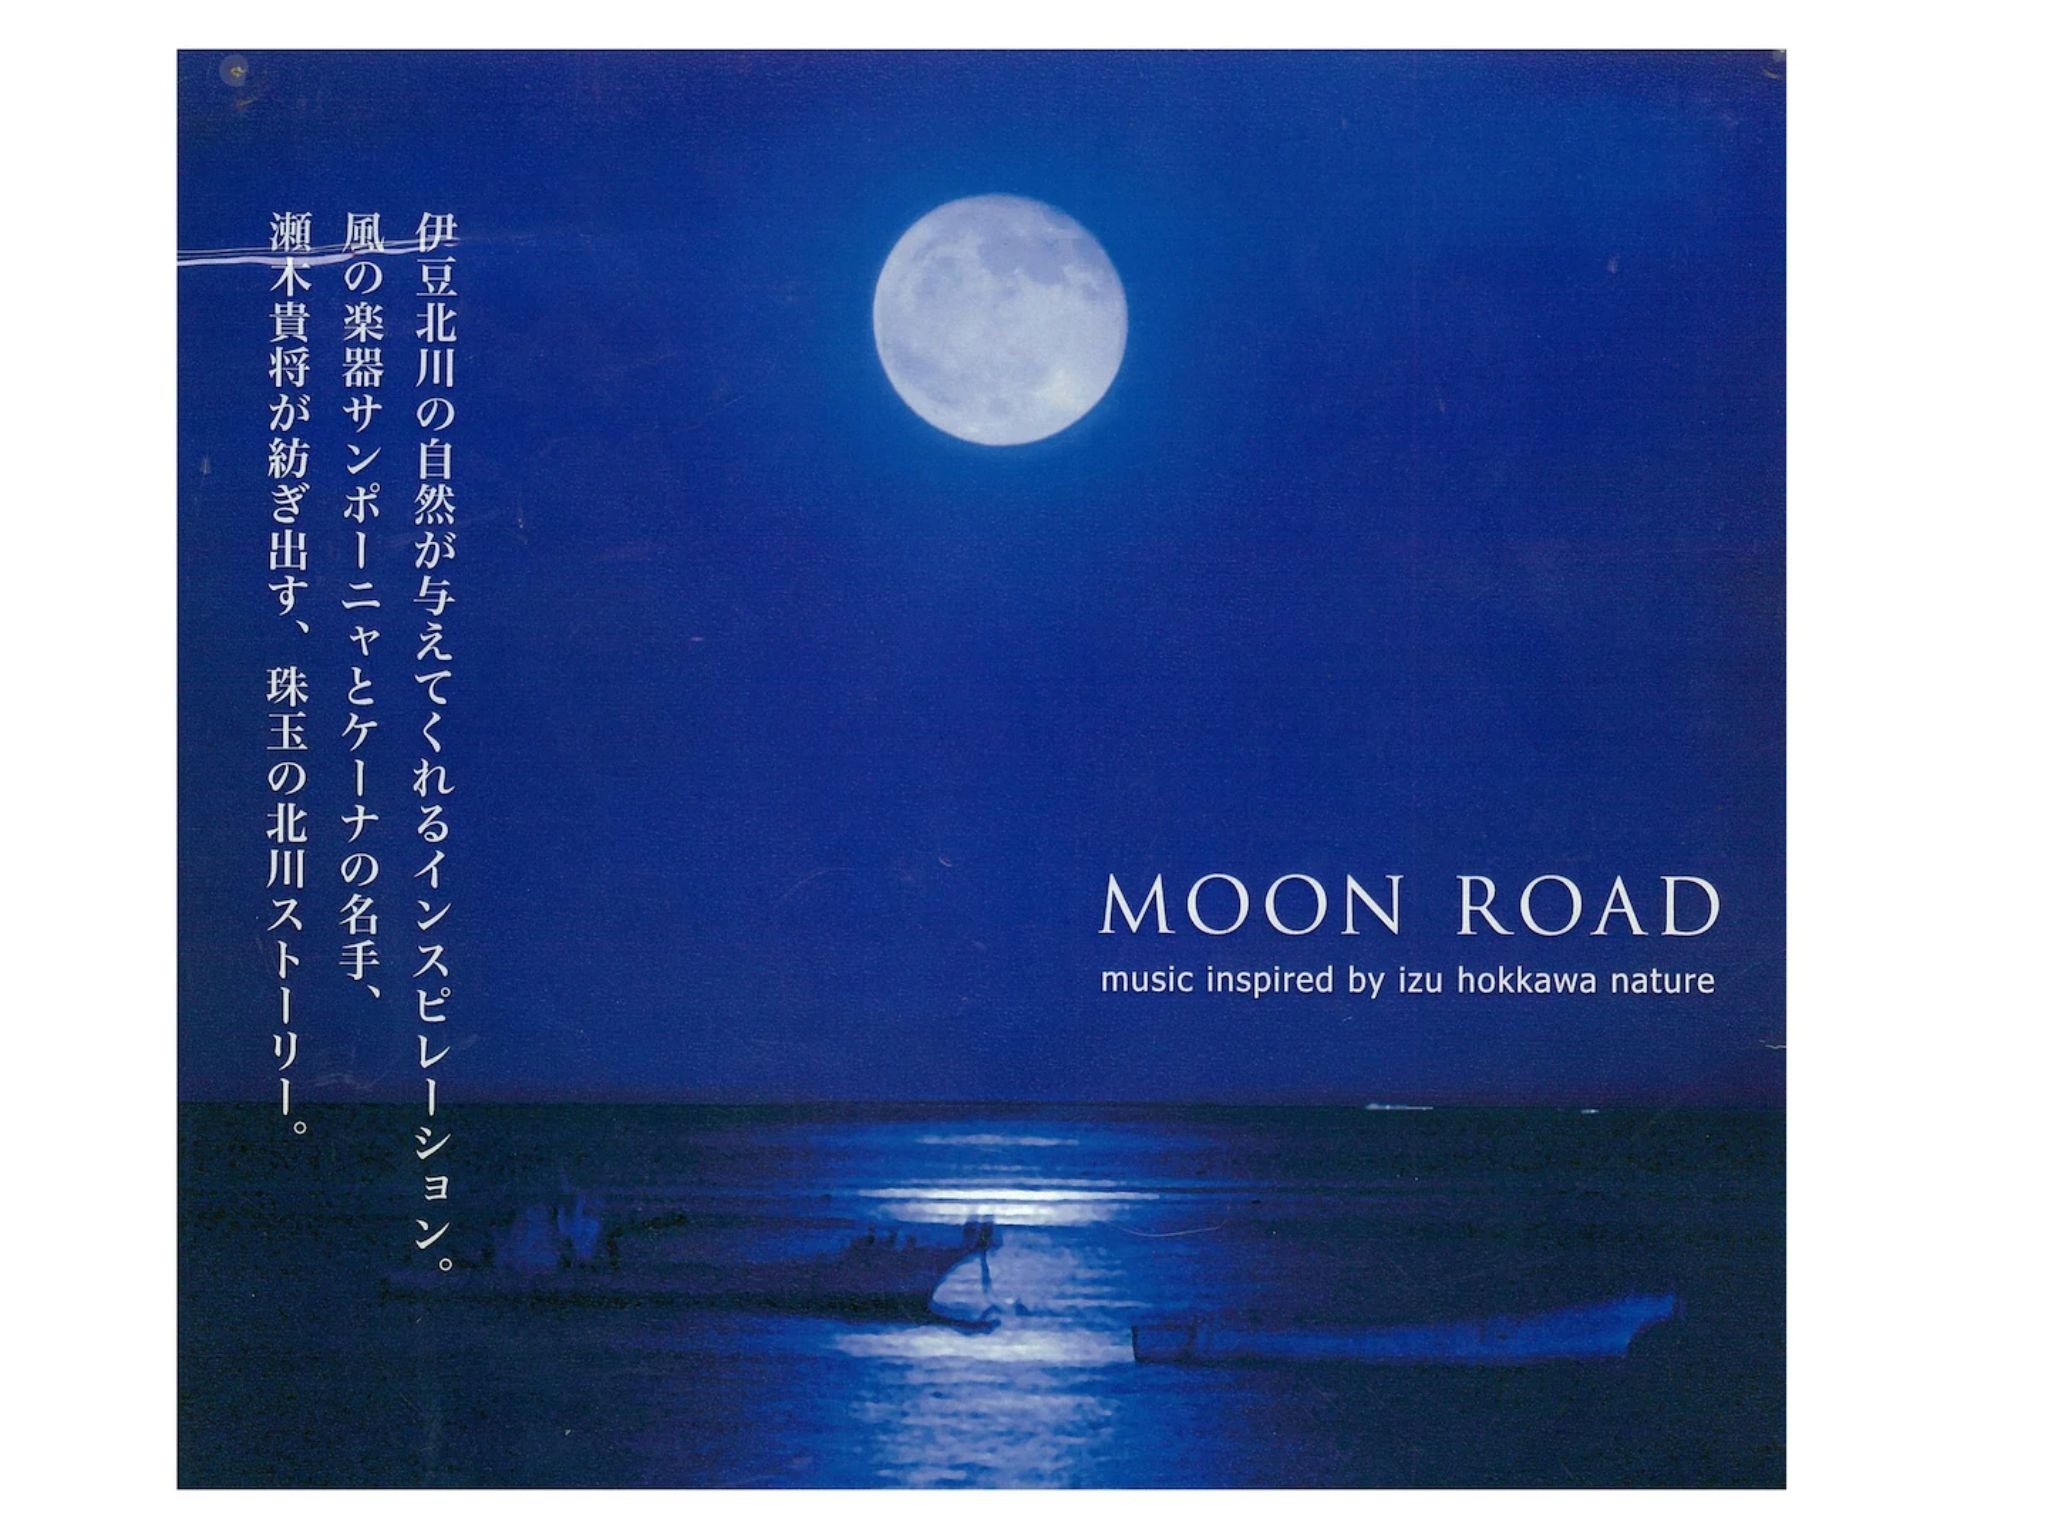 2満天の星に伊豆北川ムーンロード 神秘的な月光が目の前の海面に道を描きます